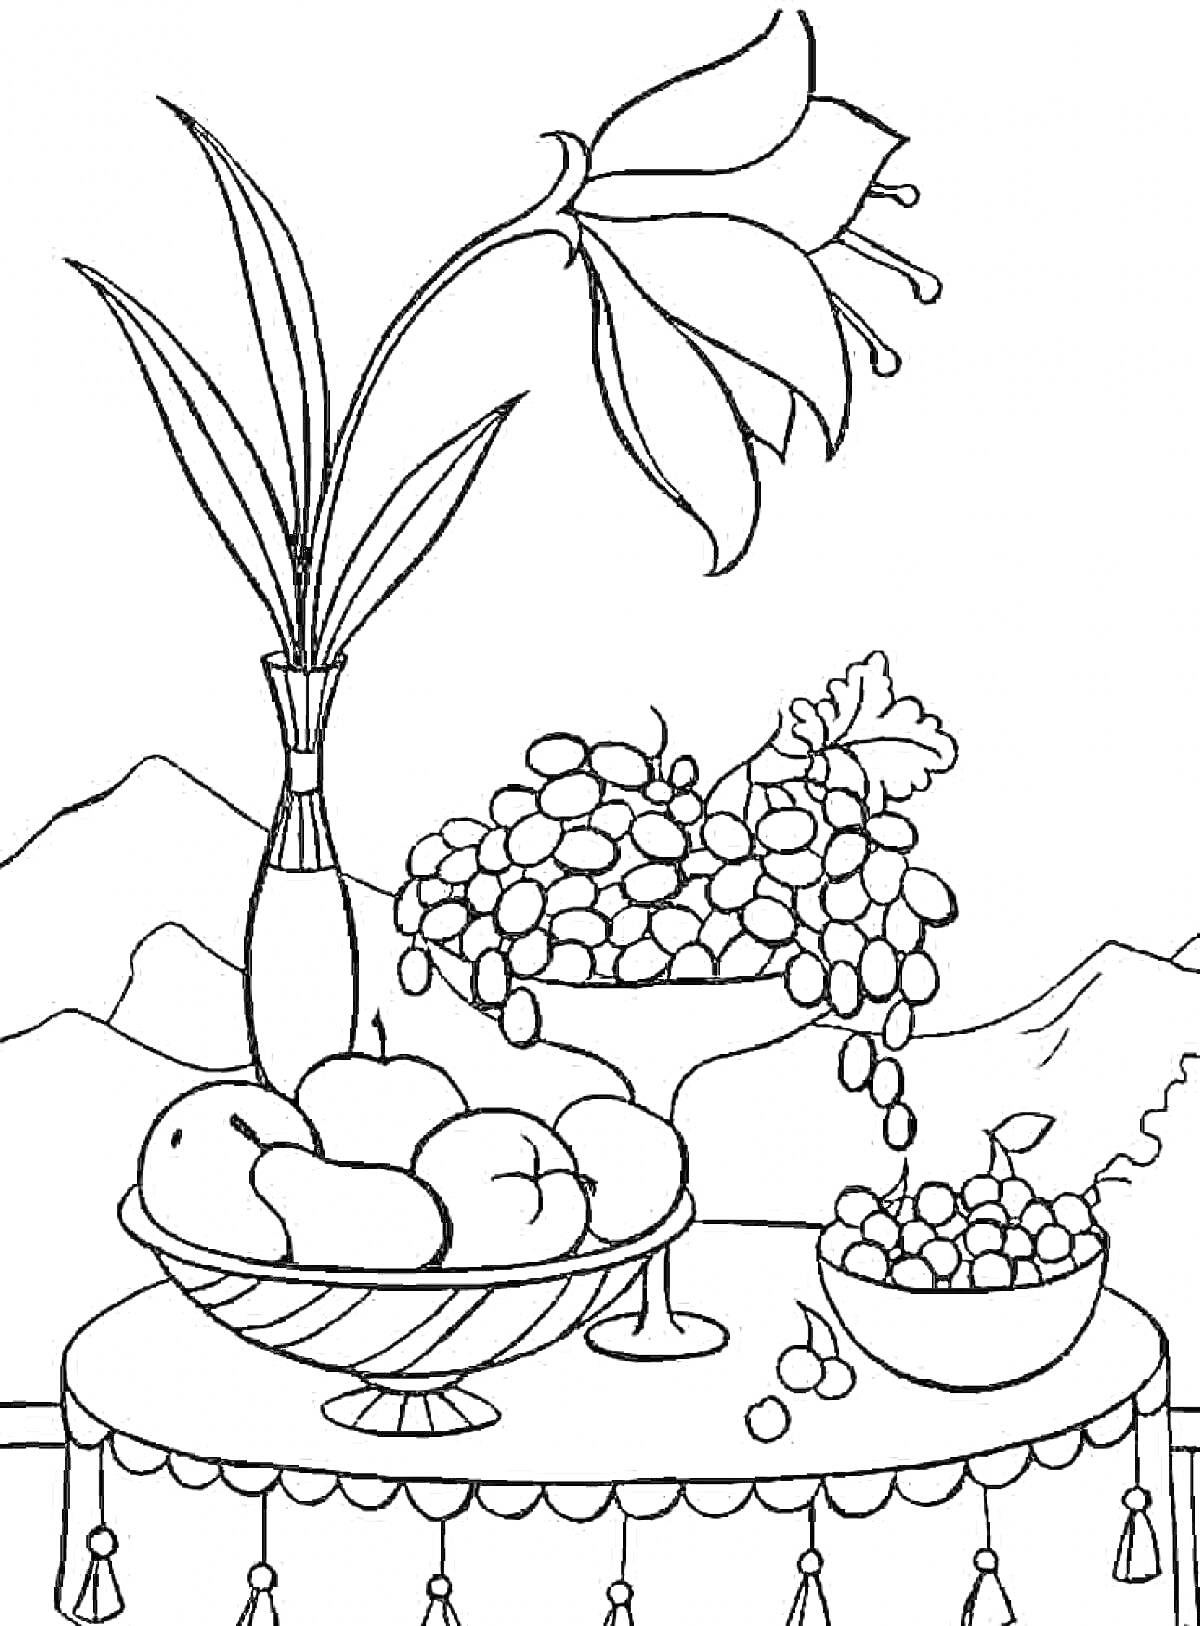 Раскраска Ваза с цветком, фруктовая чаша с яблоками и виноградом, чаша с ягодами на столе с горным пейзажем на заднем плане